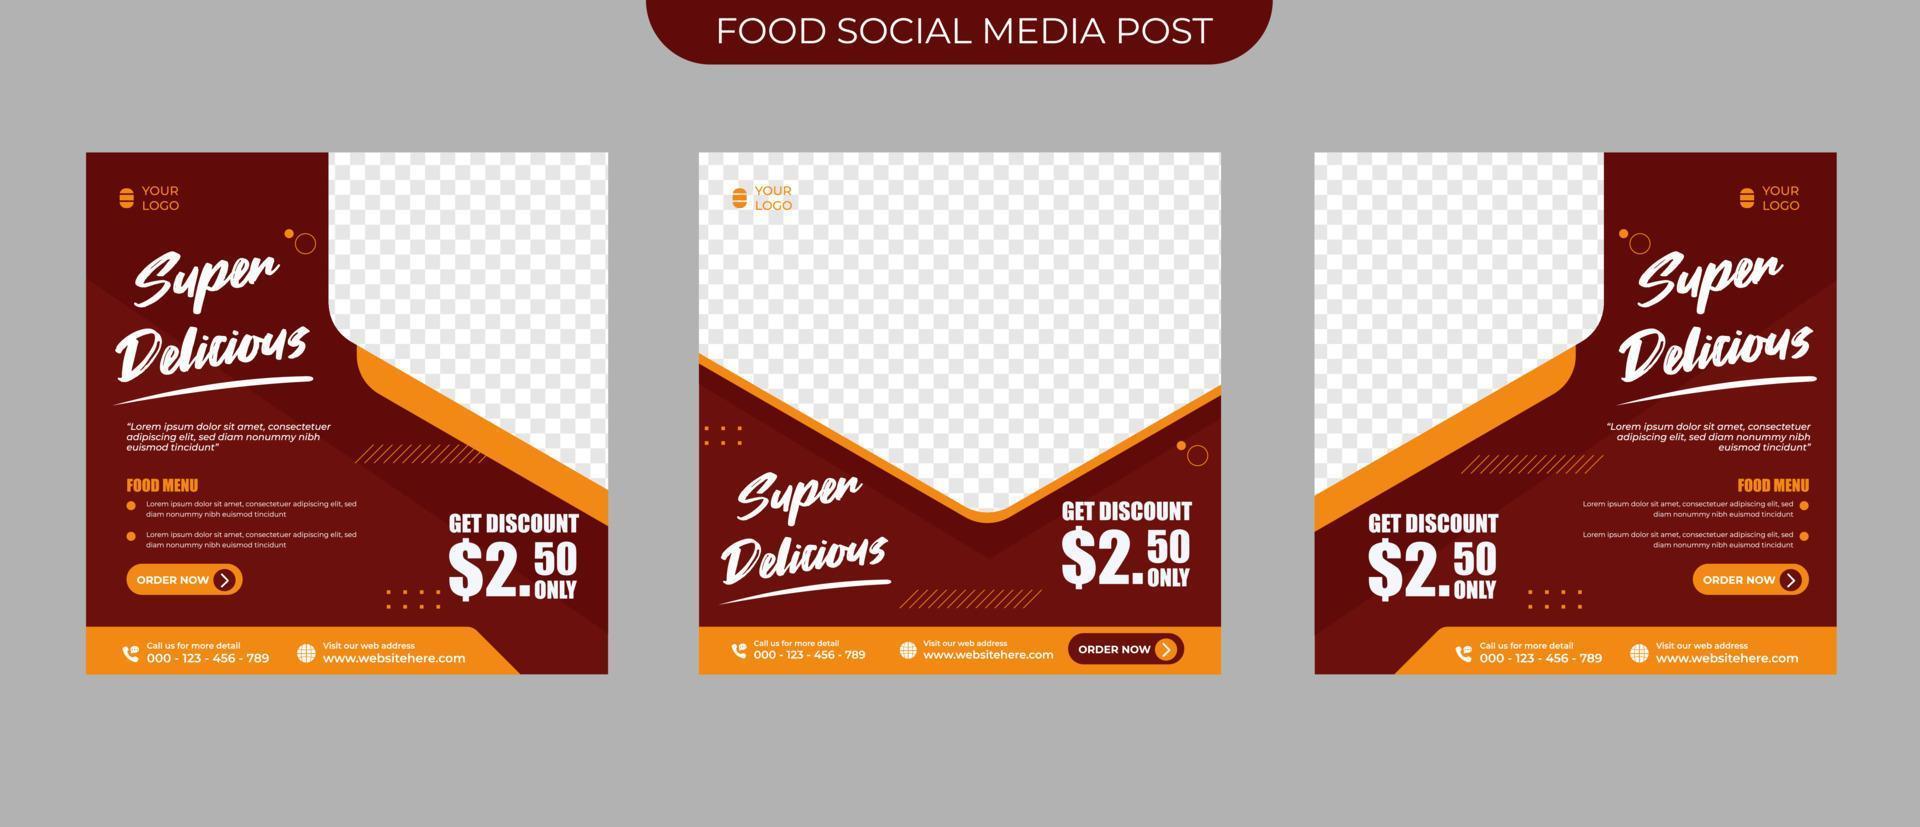 Restaurant-Essensmenü-Werbekonzept für eine Reihe von bearbeitbaren Social-Media-Post-Bannern und Flyer-Quadrat-Vektor-Vorlagen vektor